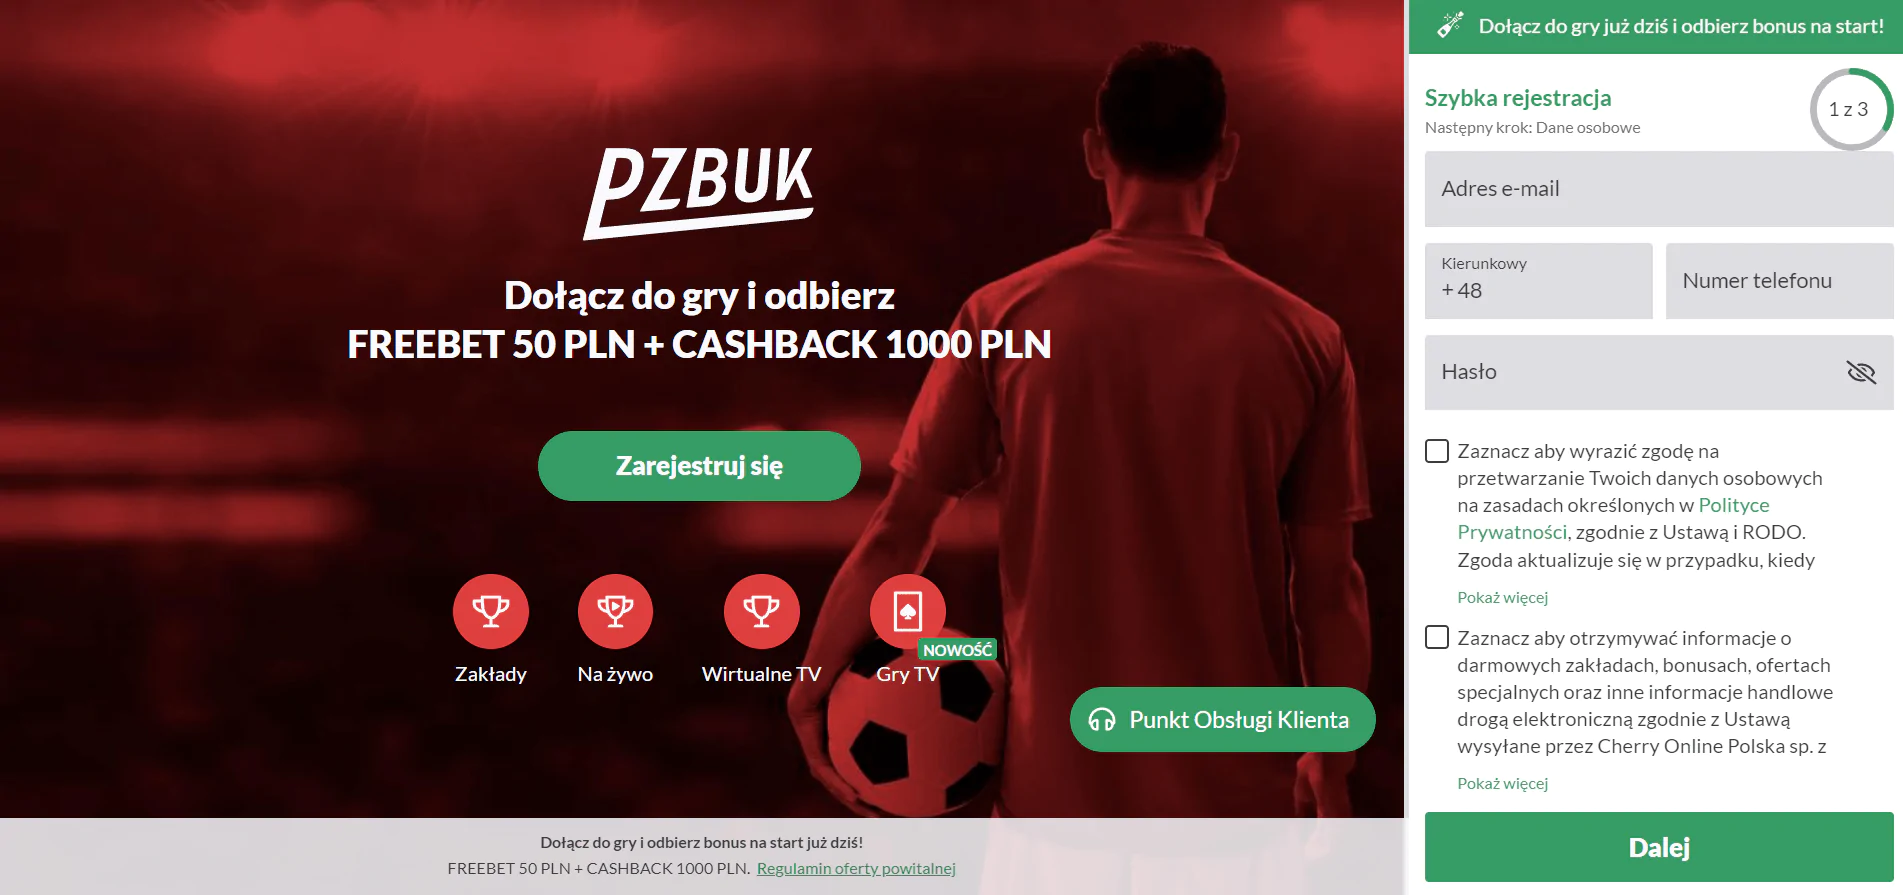 Załóż nowe konto gracza, żeby otrzymać freebet o wysokości 50 PLN - wejdź na stronę główną bukmachera PZBUK i kliknij przycisk rejestracji